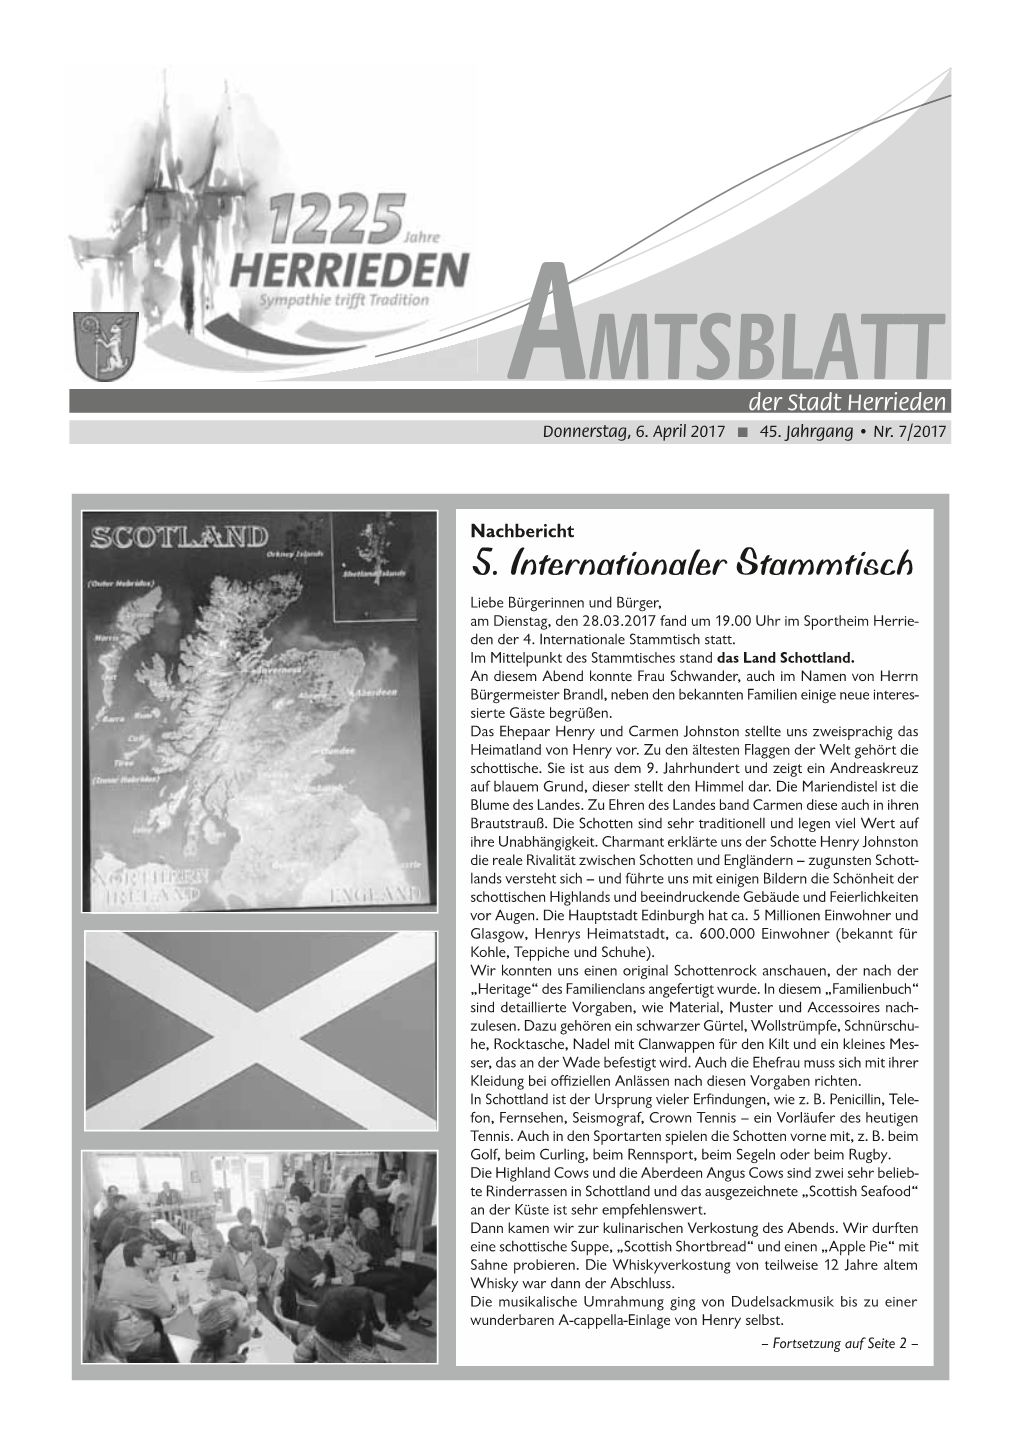 Amtsblatt 02/2017 MAIBAUM FEST (26